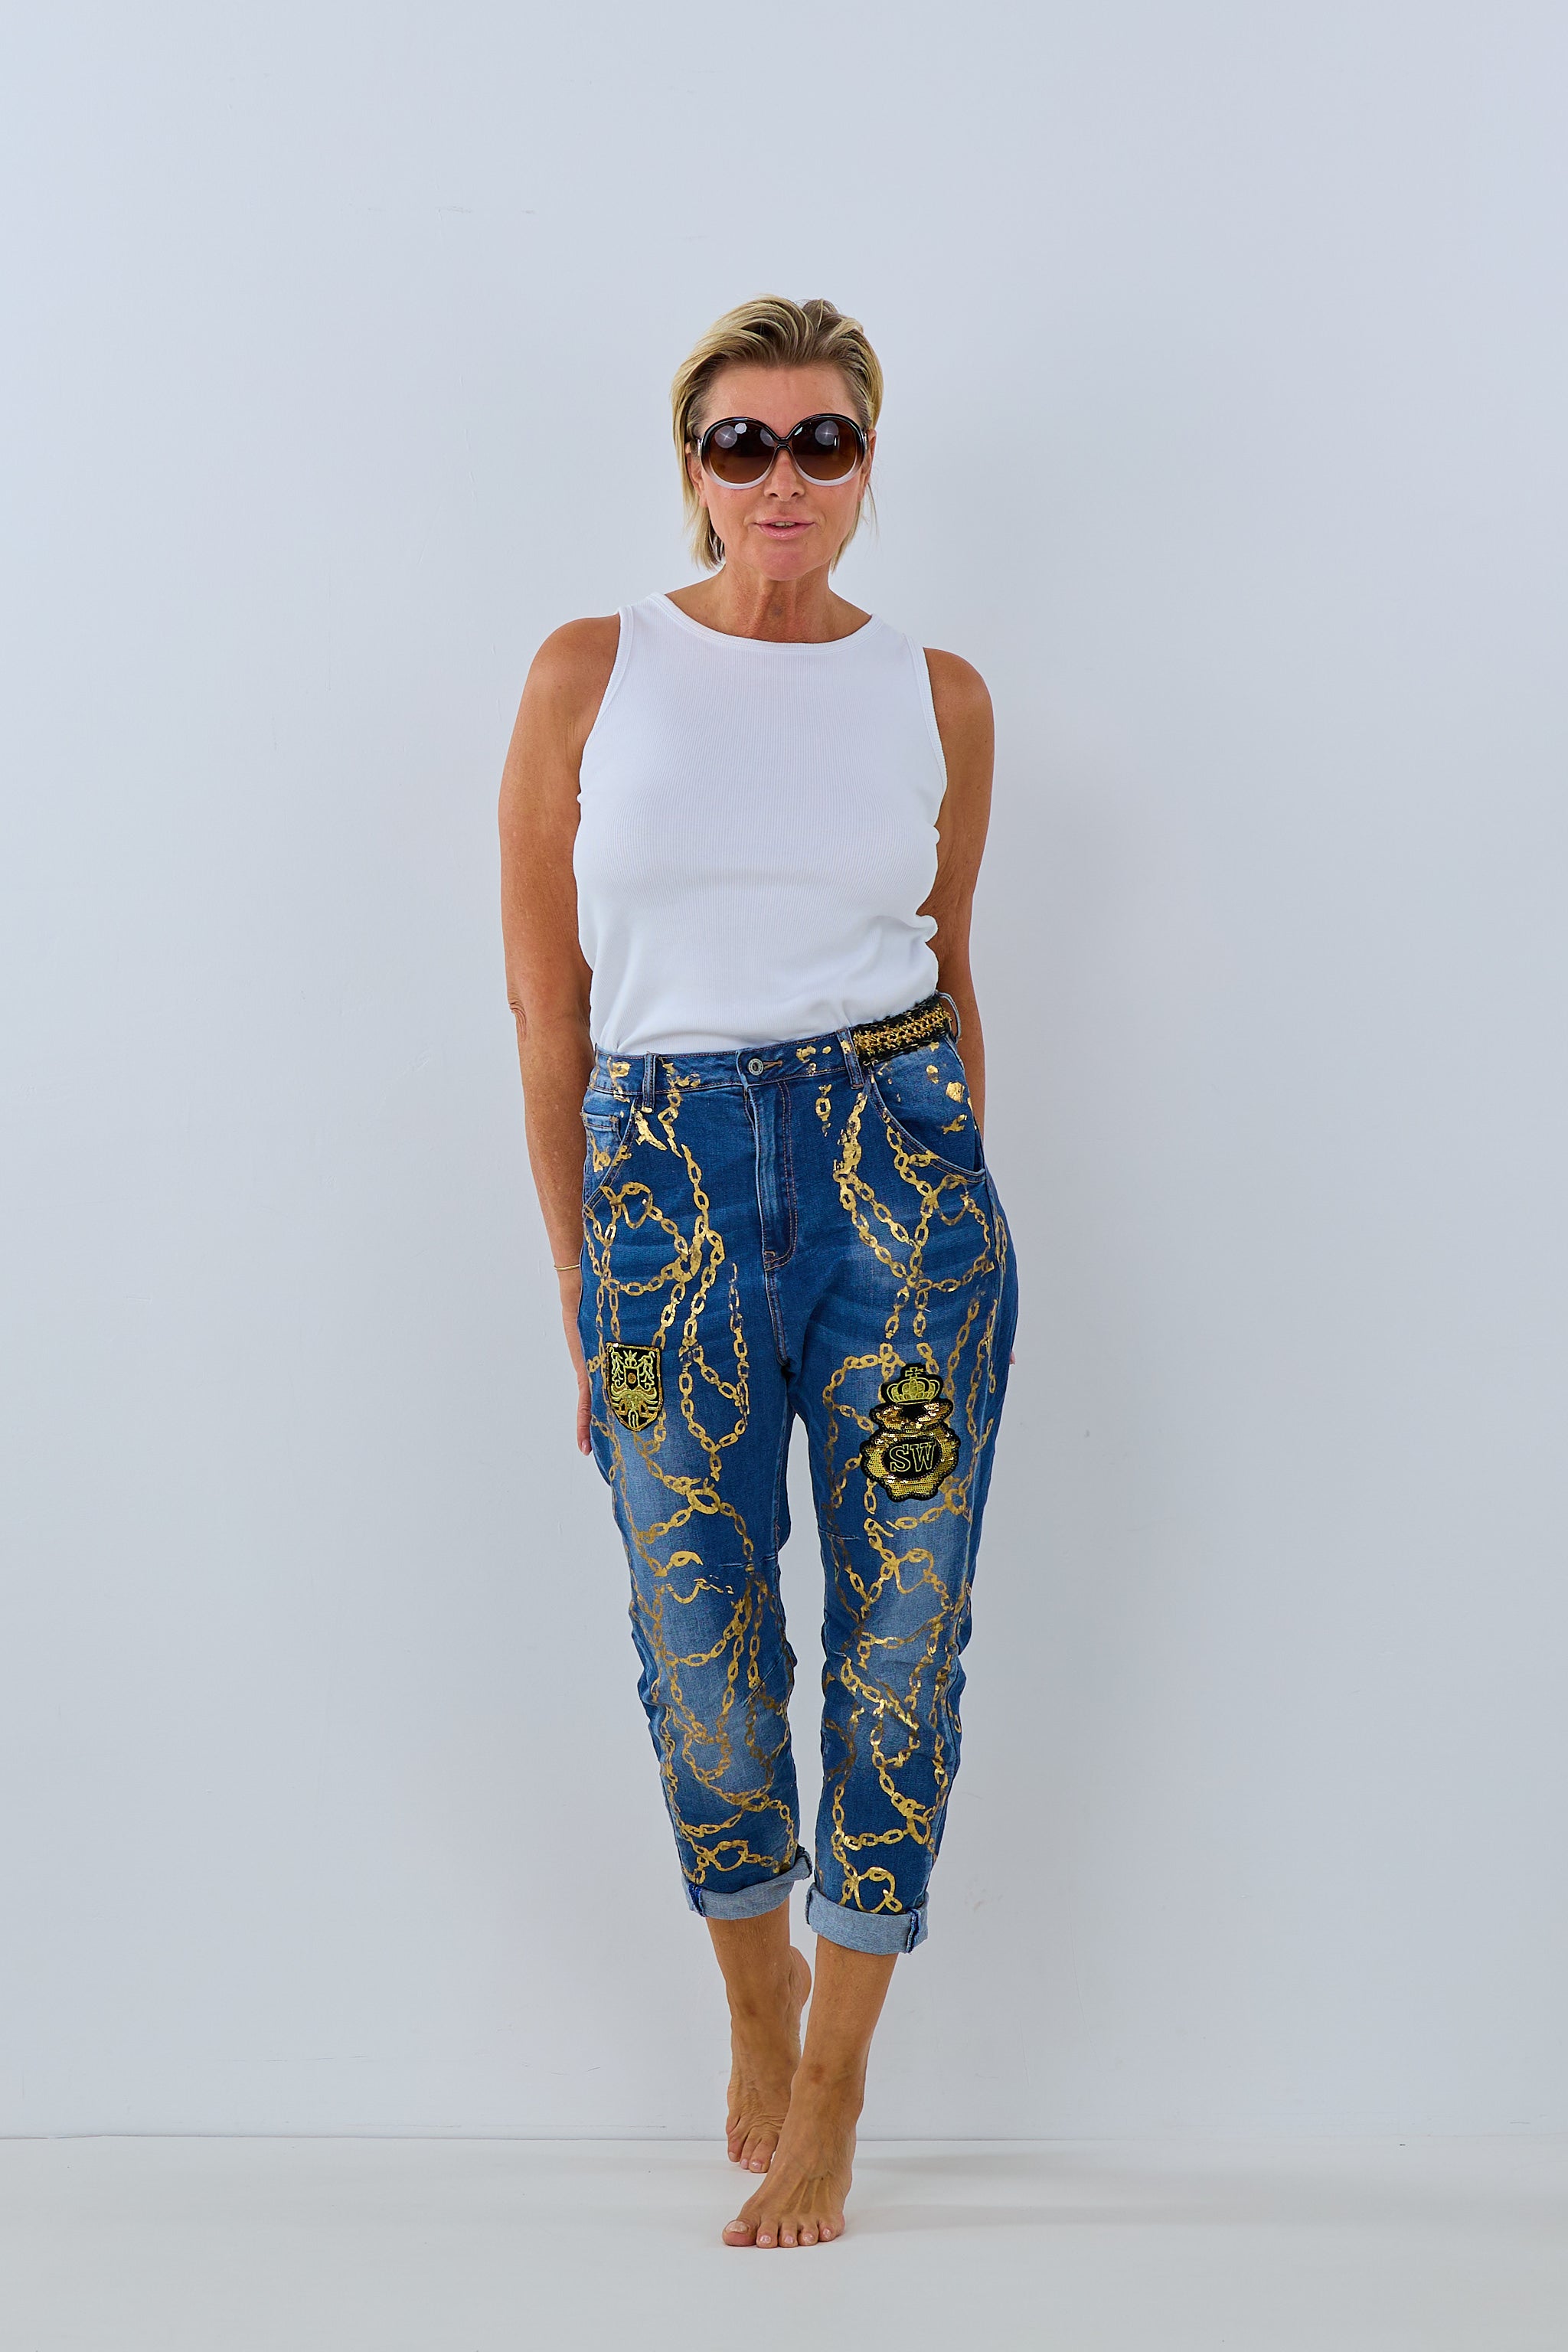 Damen Jeans mit goldenen Details Trends & Lifestyle 